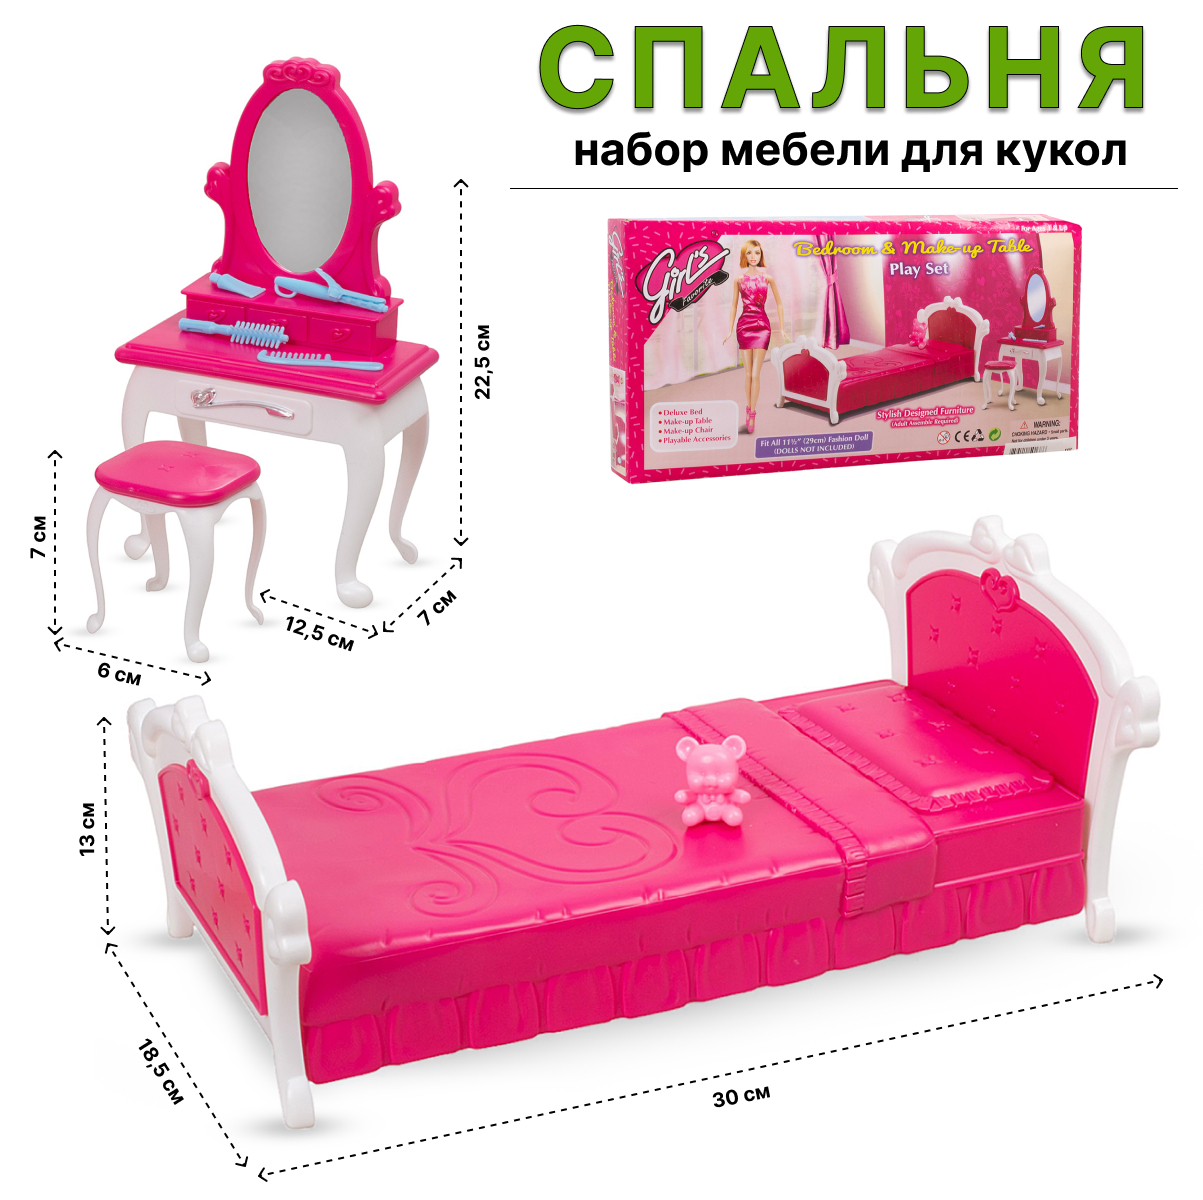 Игровой набор Tongde мебели для кукол 3014 Спальня набор детской мебели туалетный столик и стул sitstep розовый